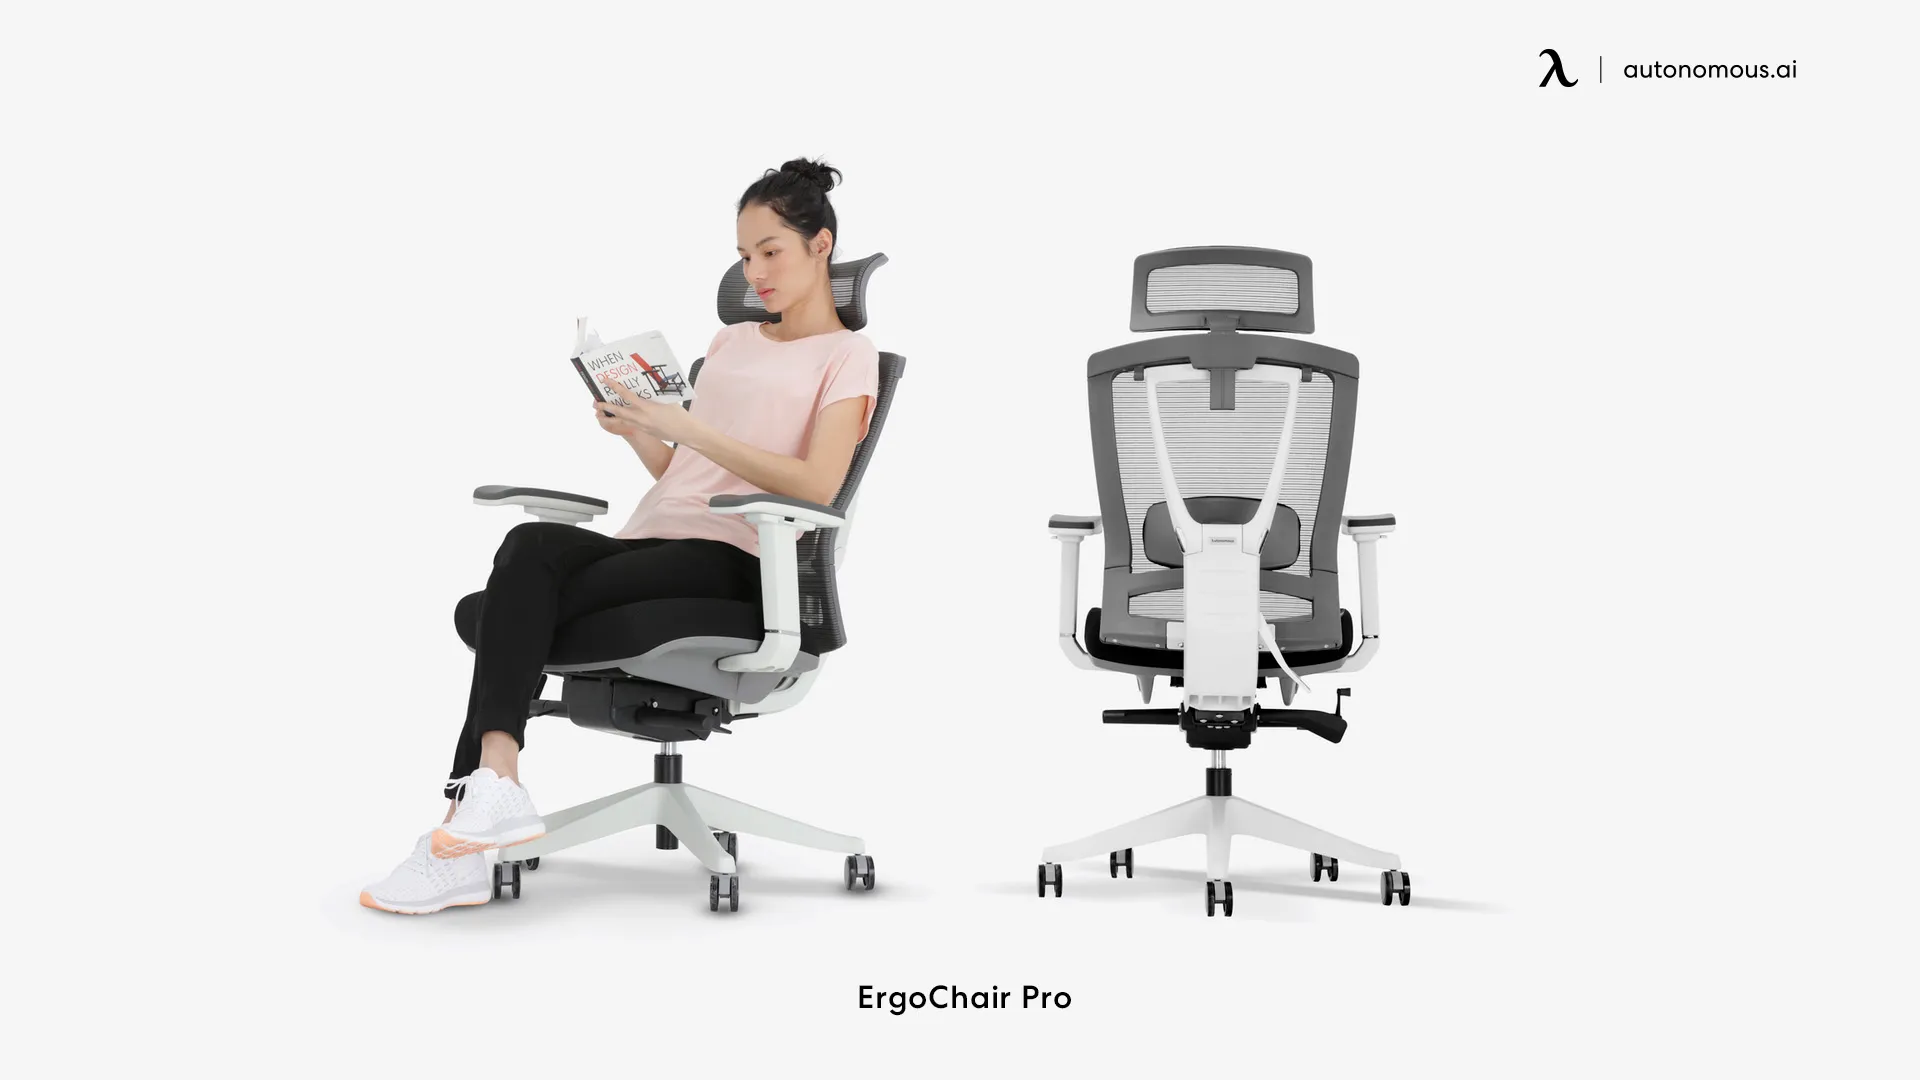 ErgoChair Pro for chronic back pain